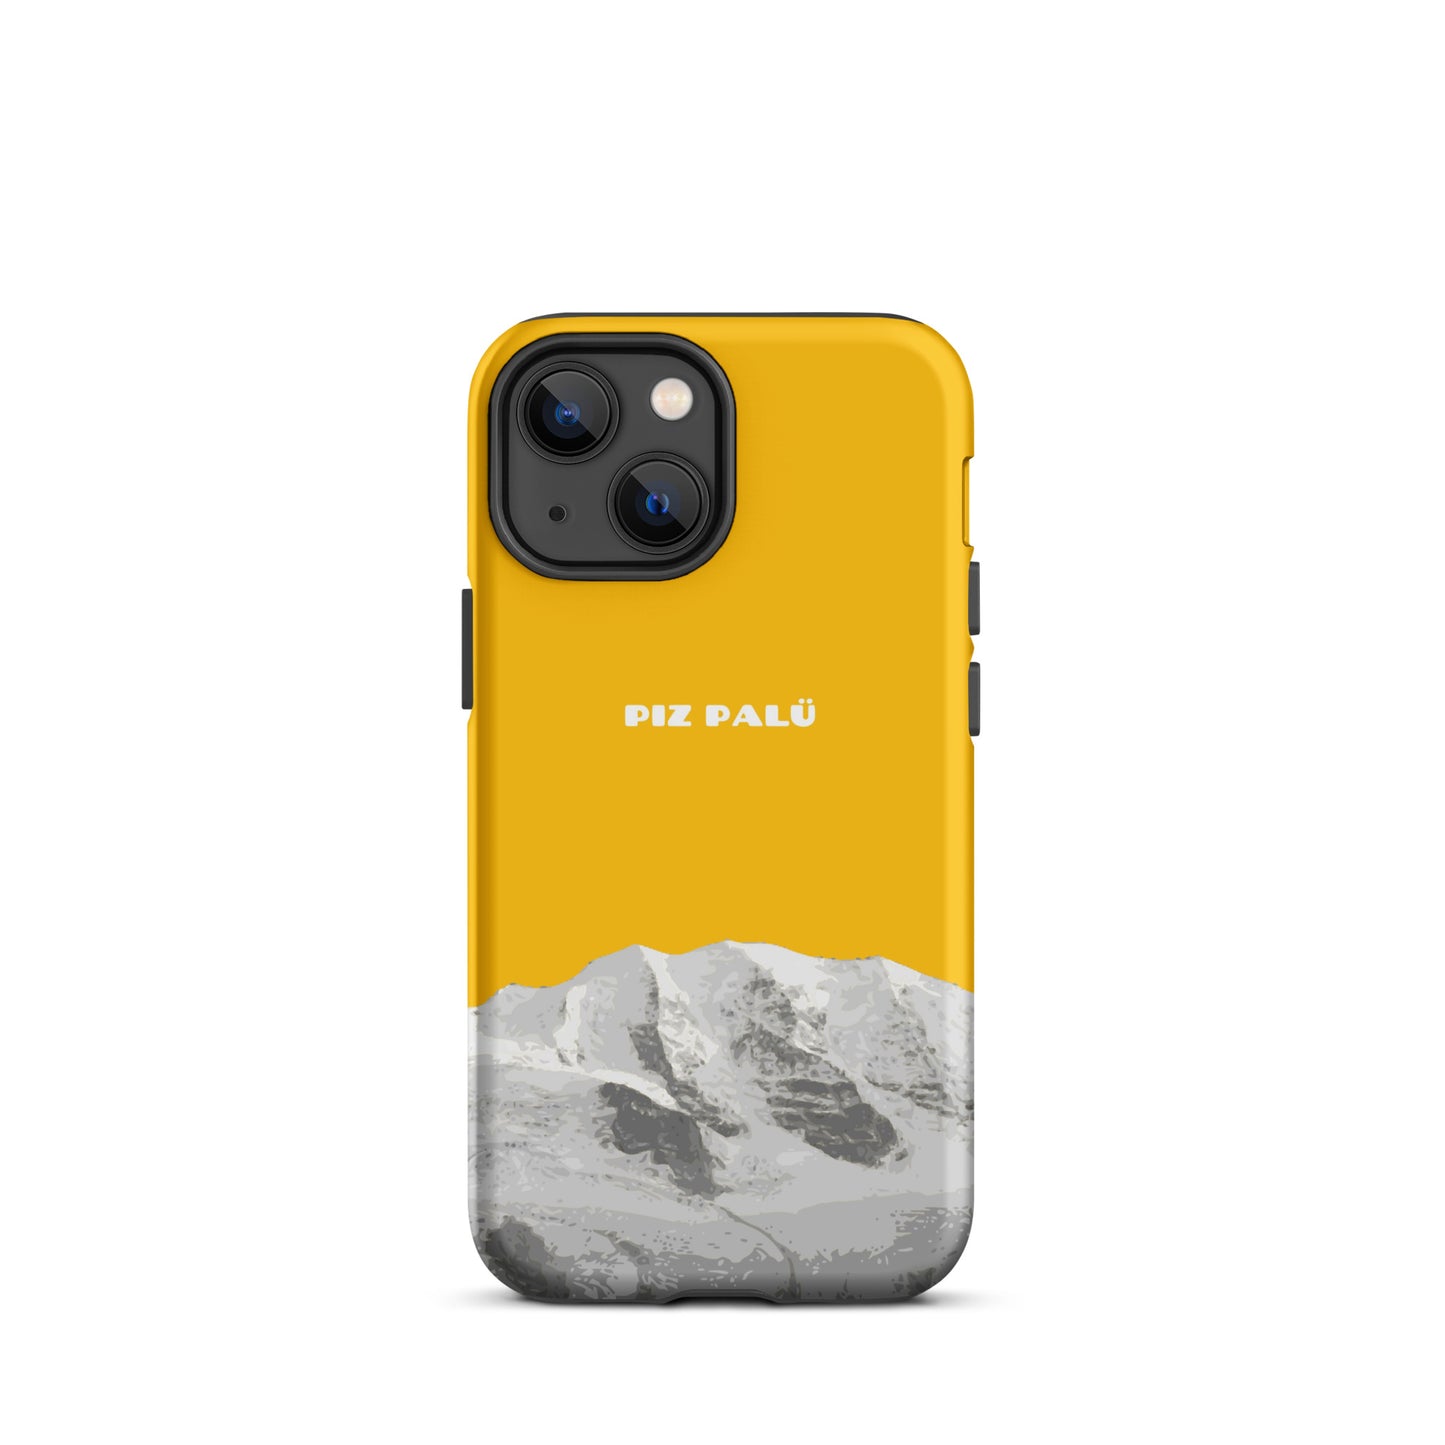 Hülle für das iPhone 13 mini von Apple in der Farbe Goldgelb, dass den Piz Palü in Graubünden zeigt.